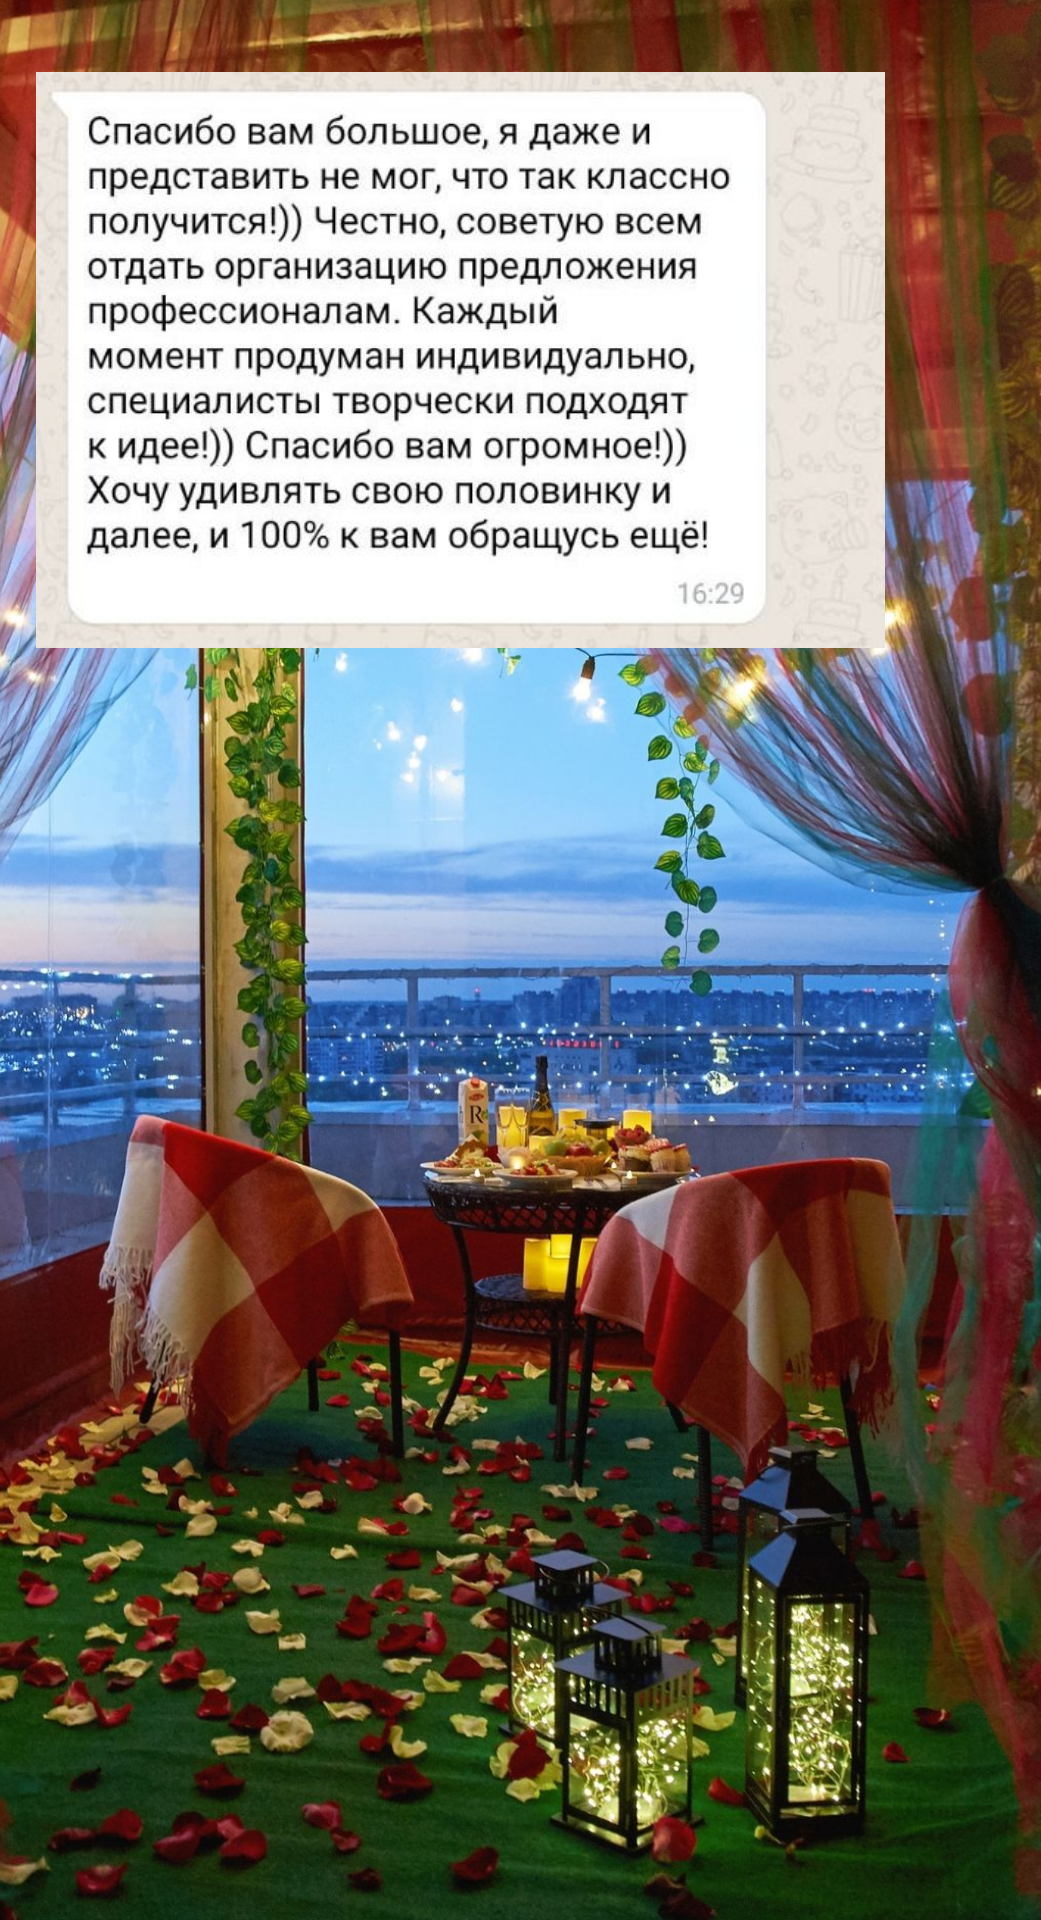 Организация предложения руки и сердца в Санкт-Петербурге
от компании Pandaevent